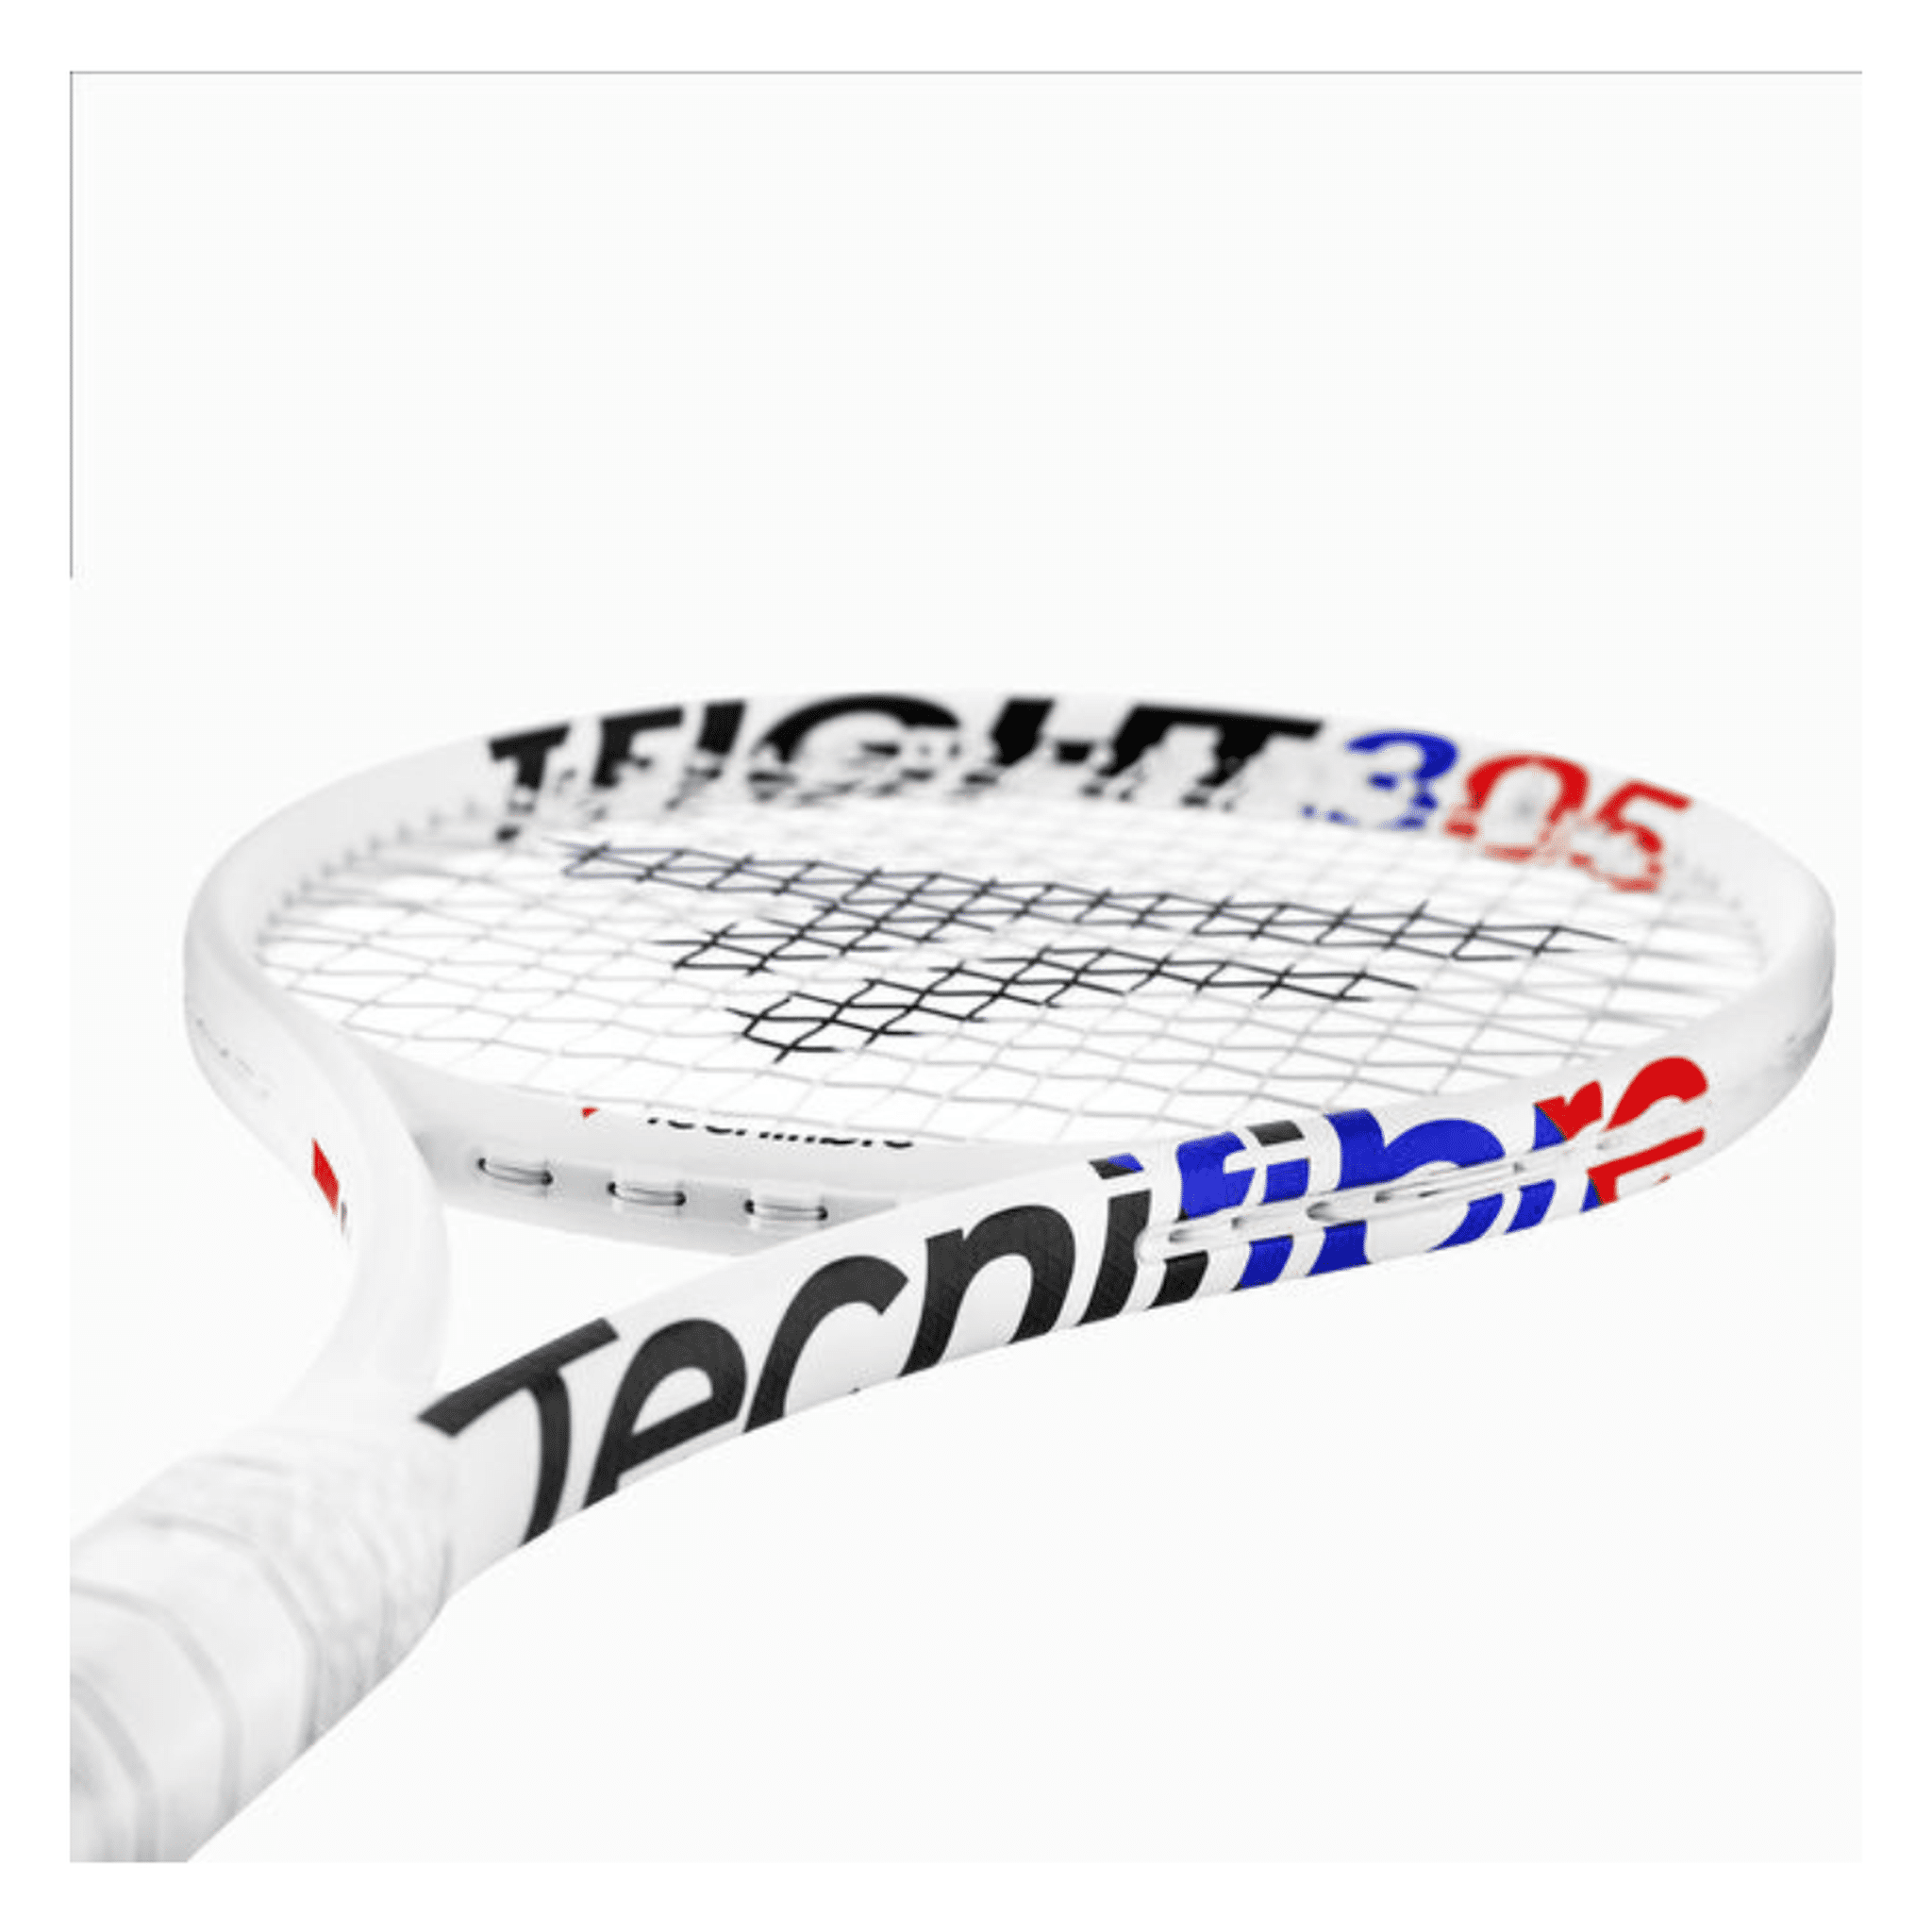 Tecnifibre T Fight305 isoflex G3